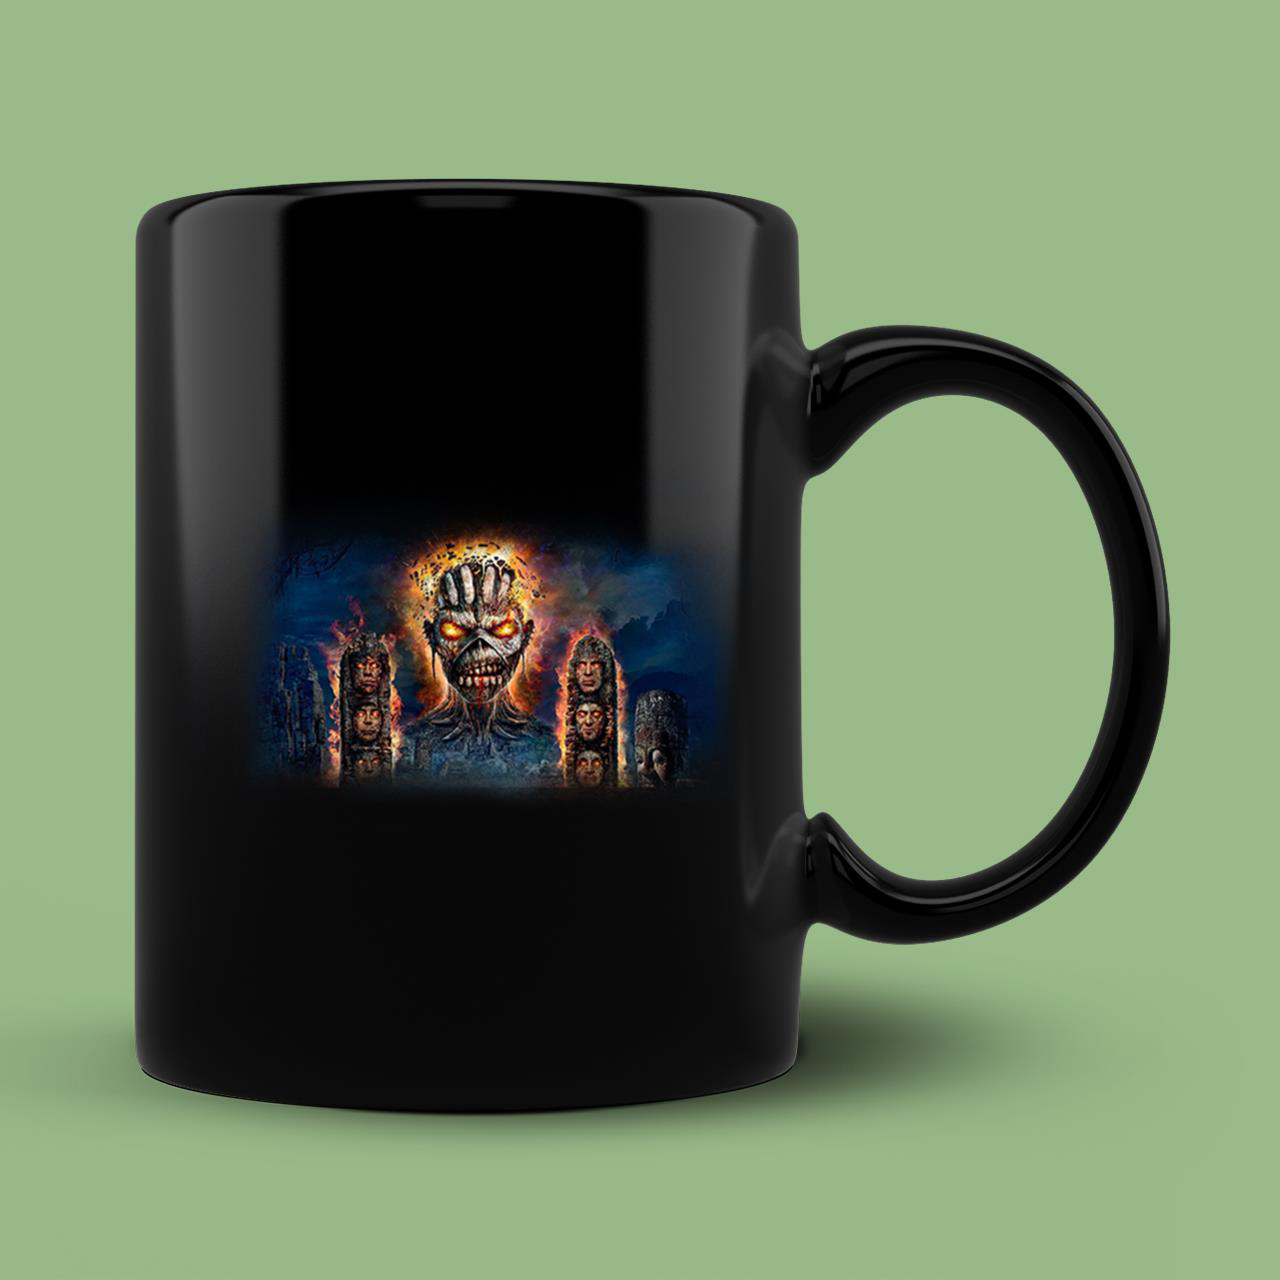 Iron Maiden Horror Skull Mug